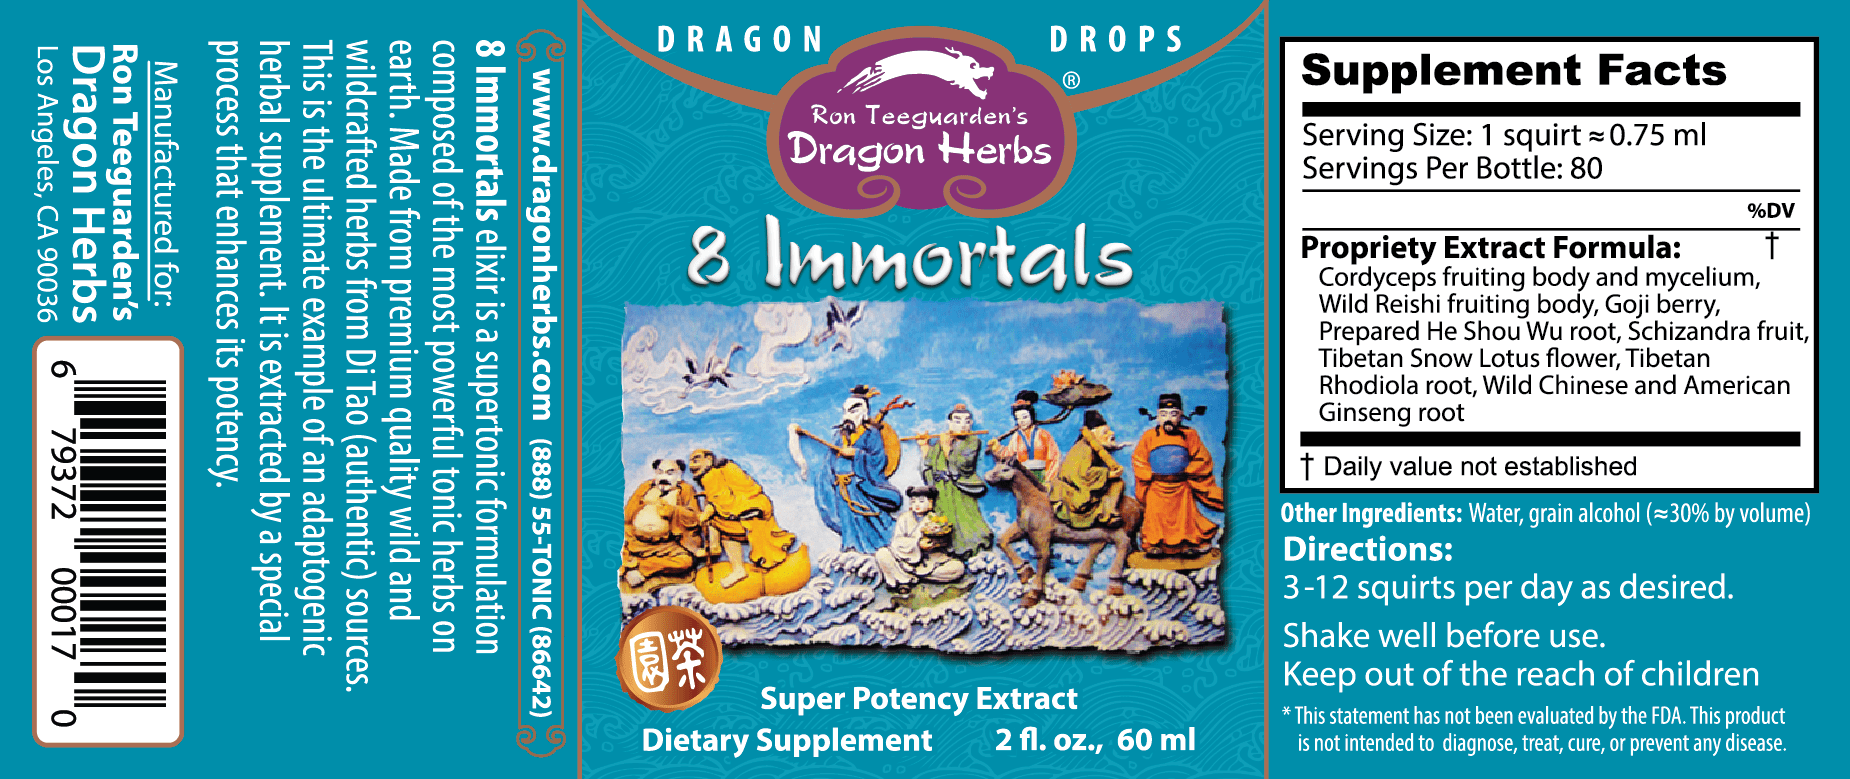 8 Immortals Label - Dragon Herbs